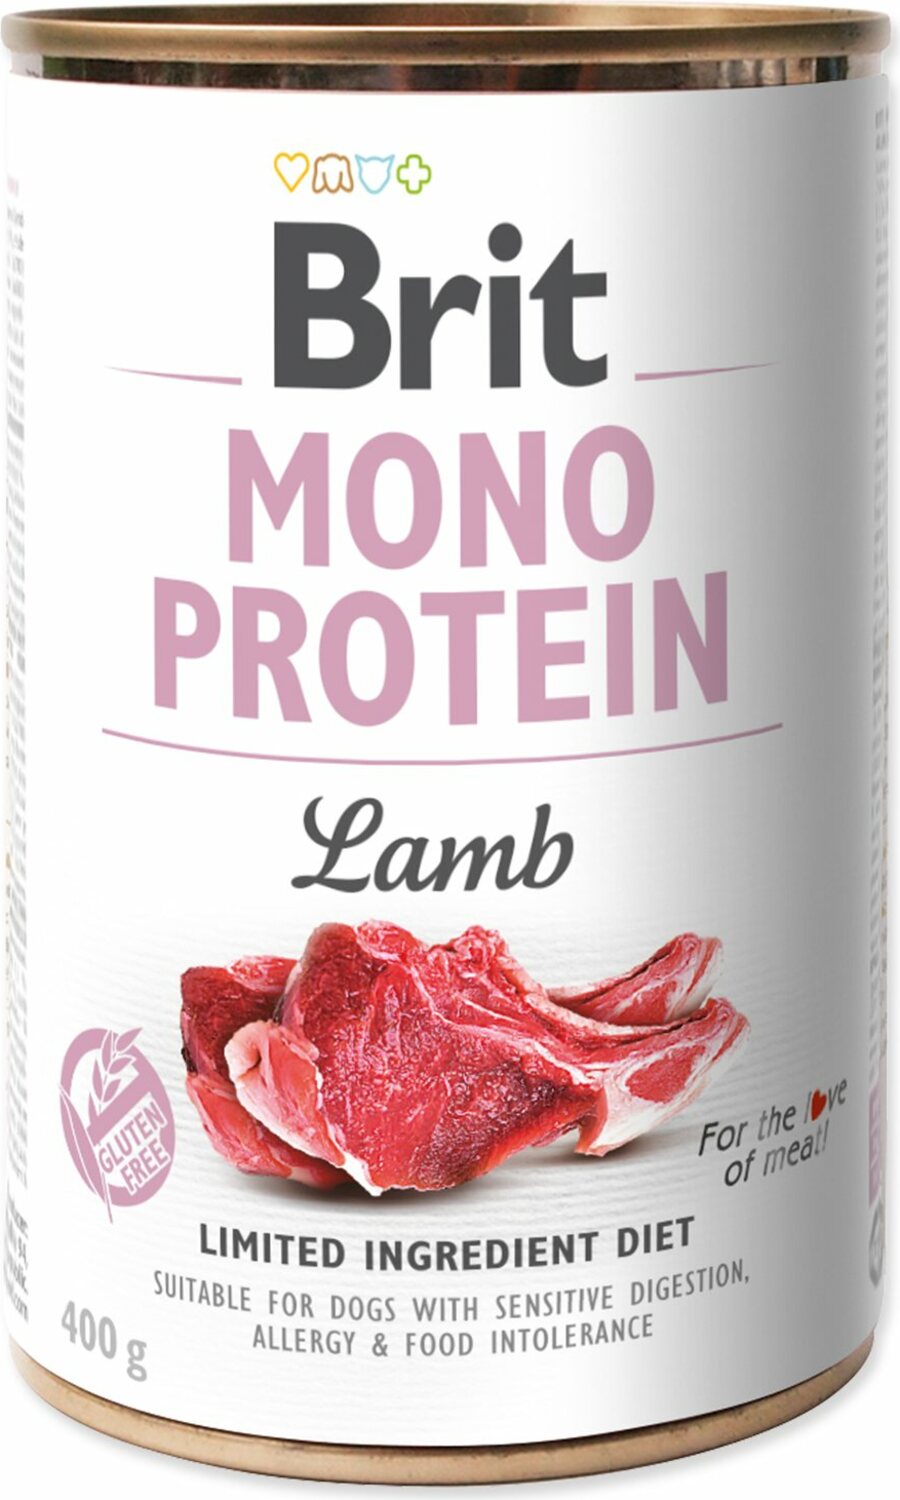 Konzerva Brit Mono protein jehně 400g